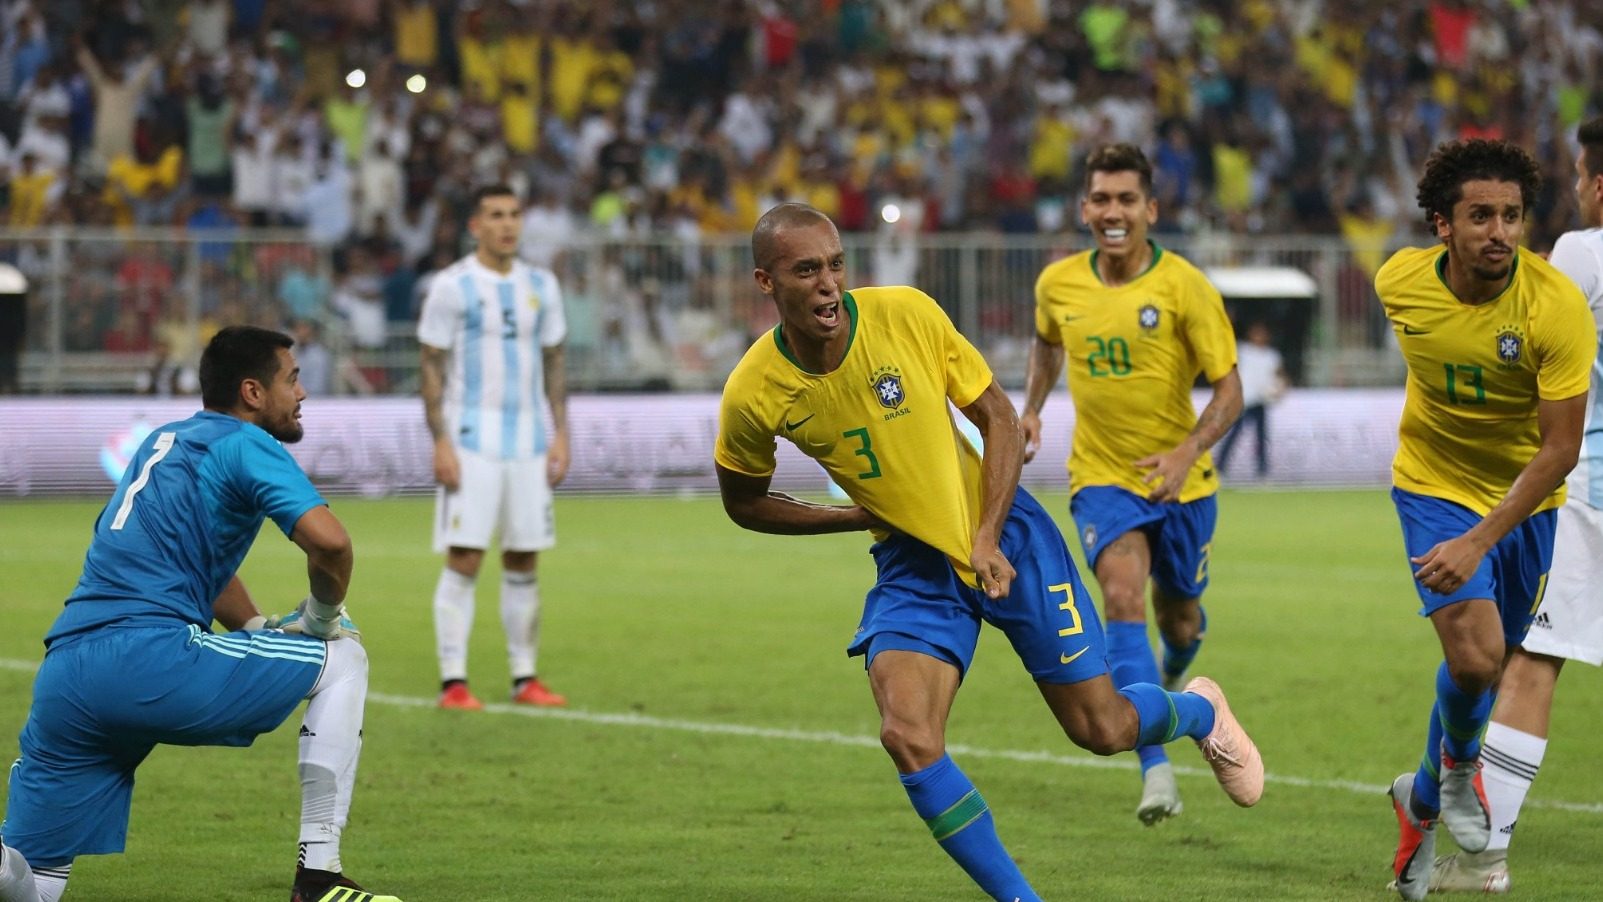 Brasil vs argentina copa america 2021 live